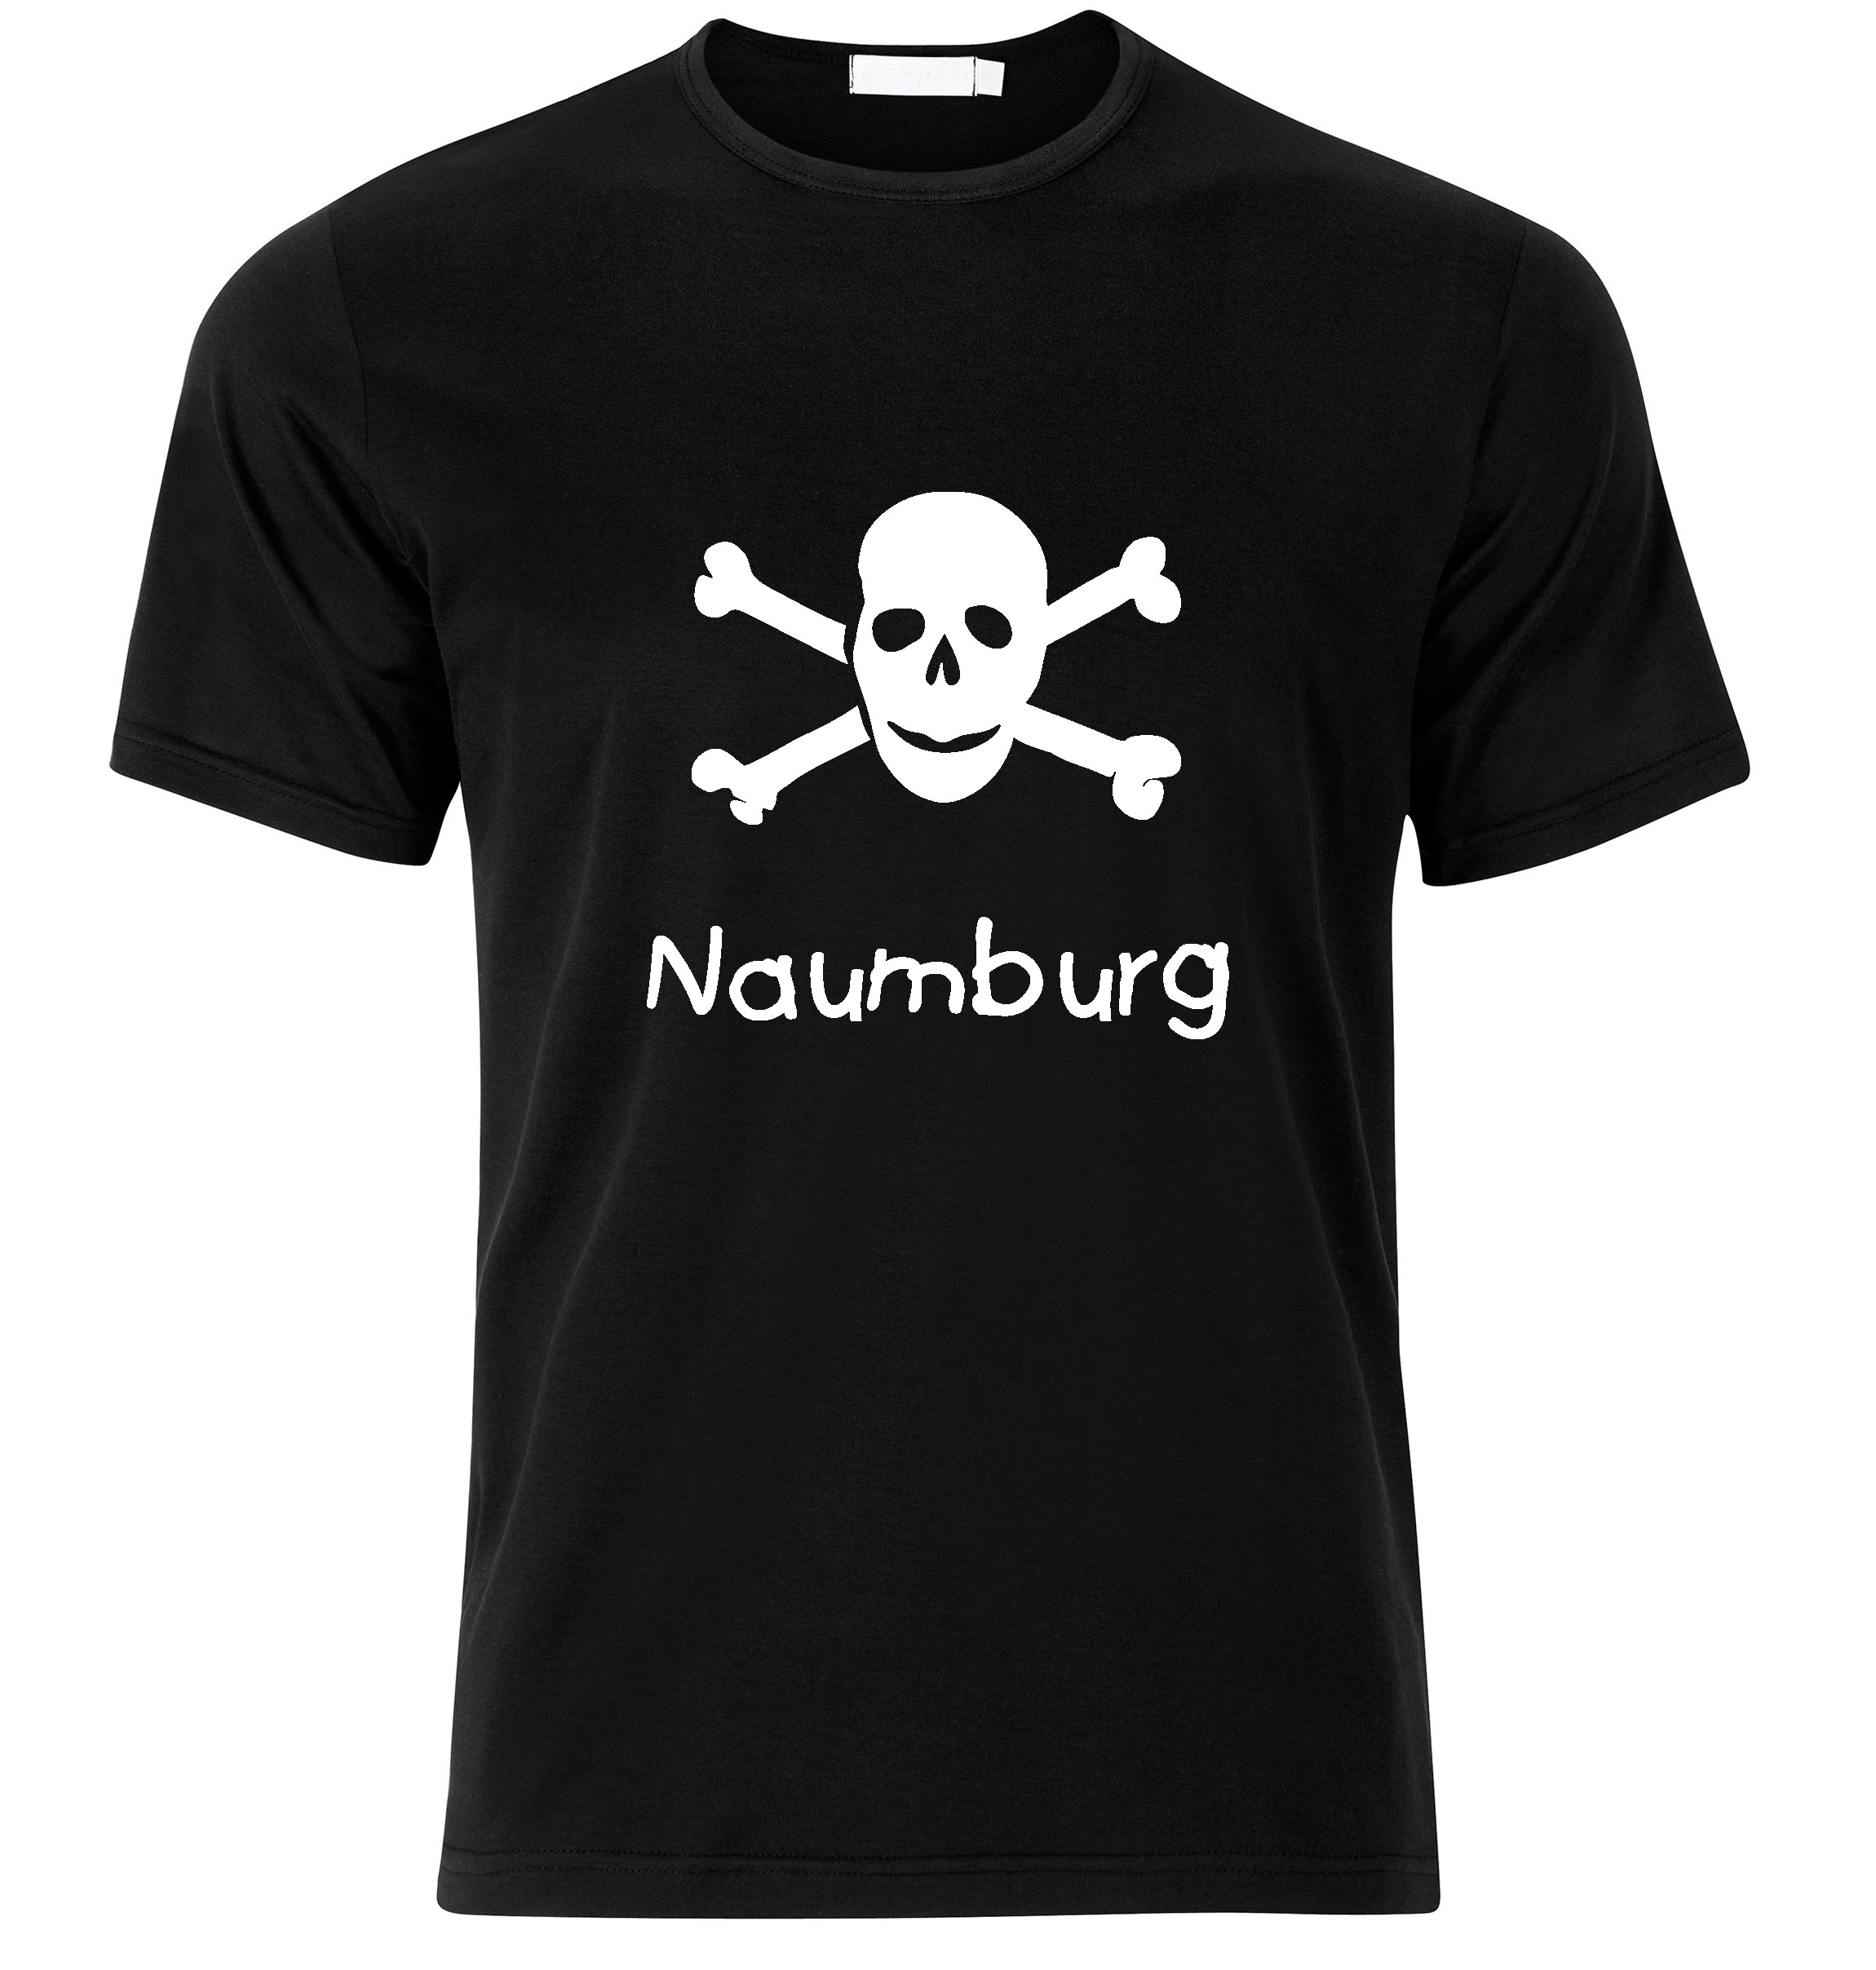 T-Shirt Naumburg Jolly Roger, Totenkopf